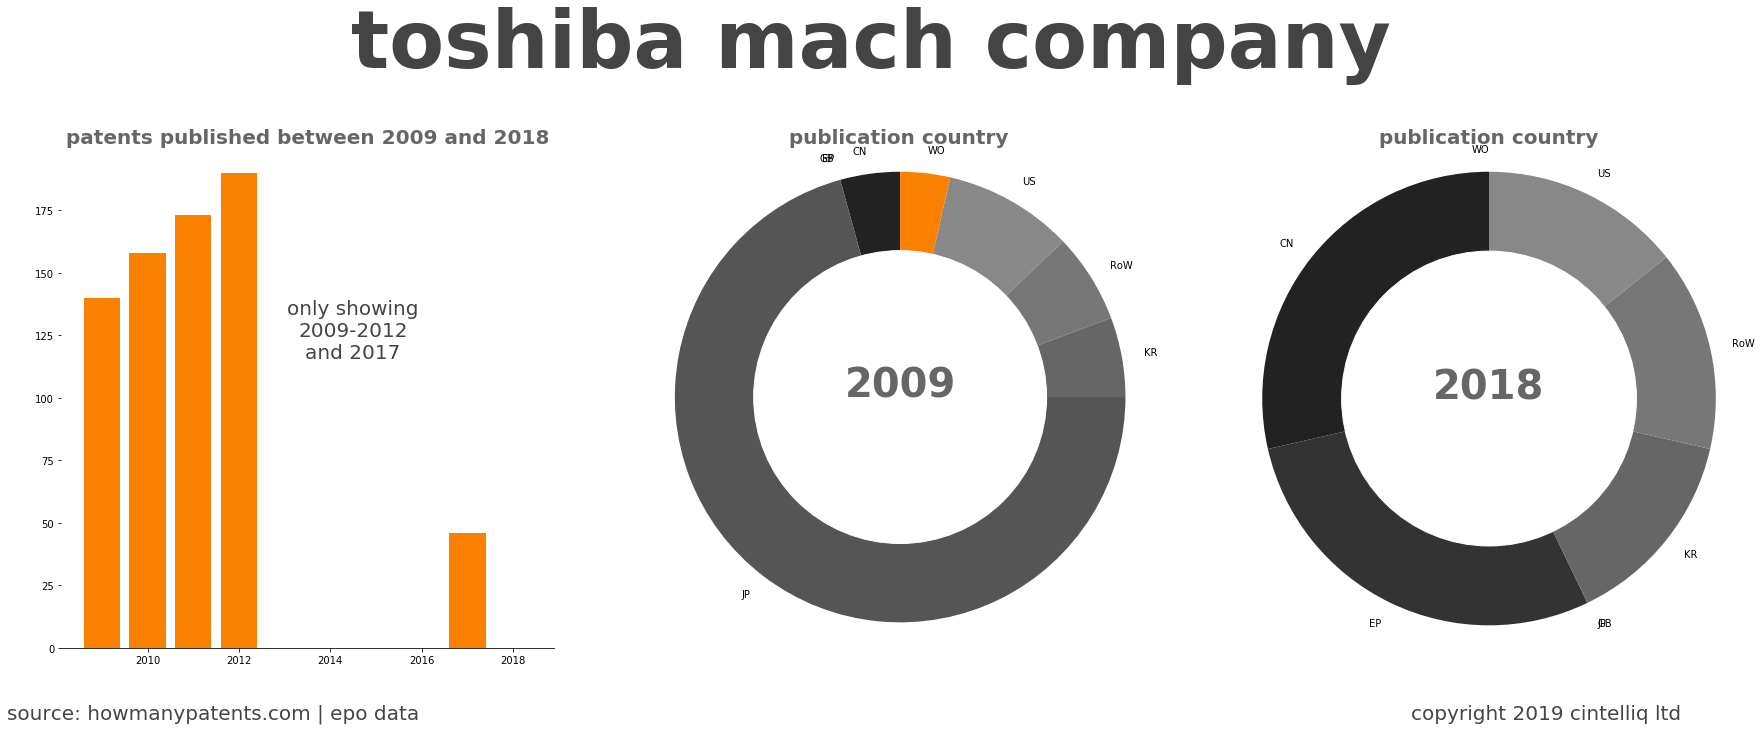 summary of patents for Toshiba Mach Company